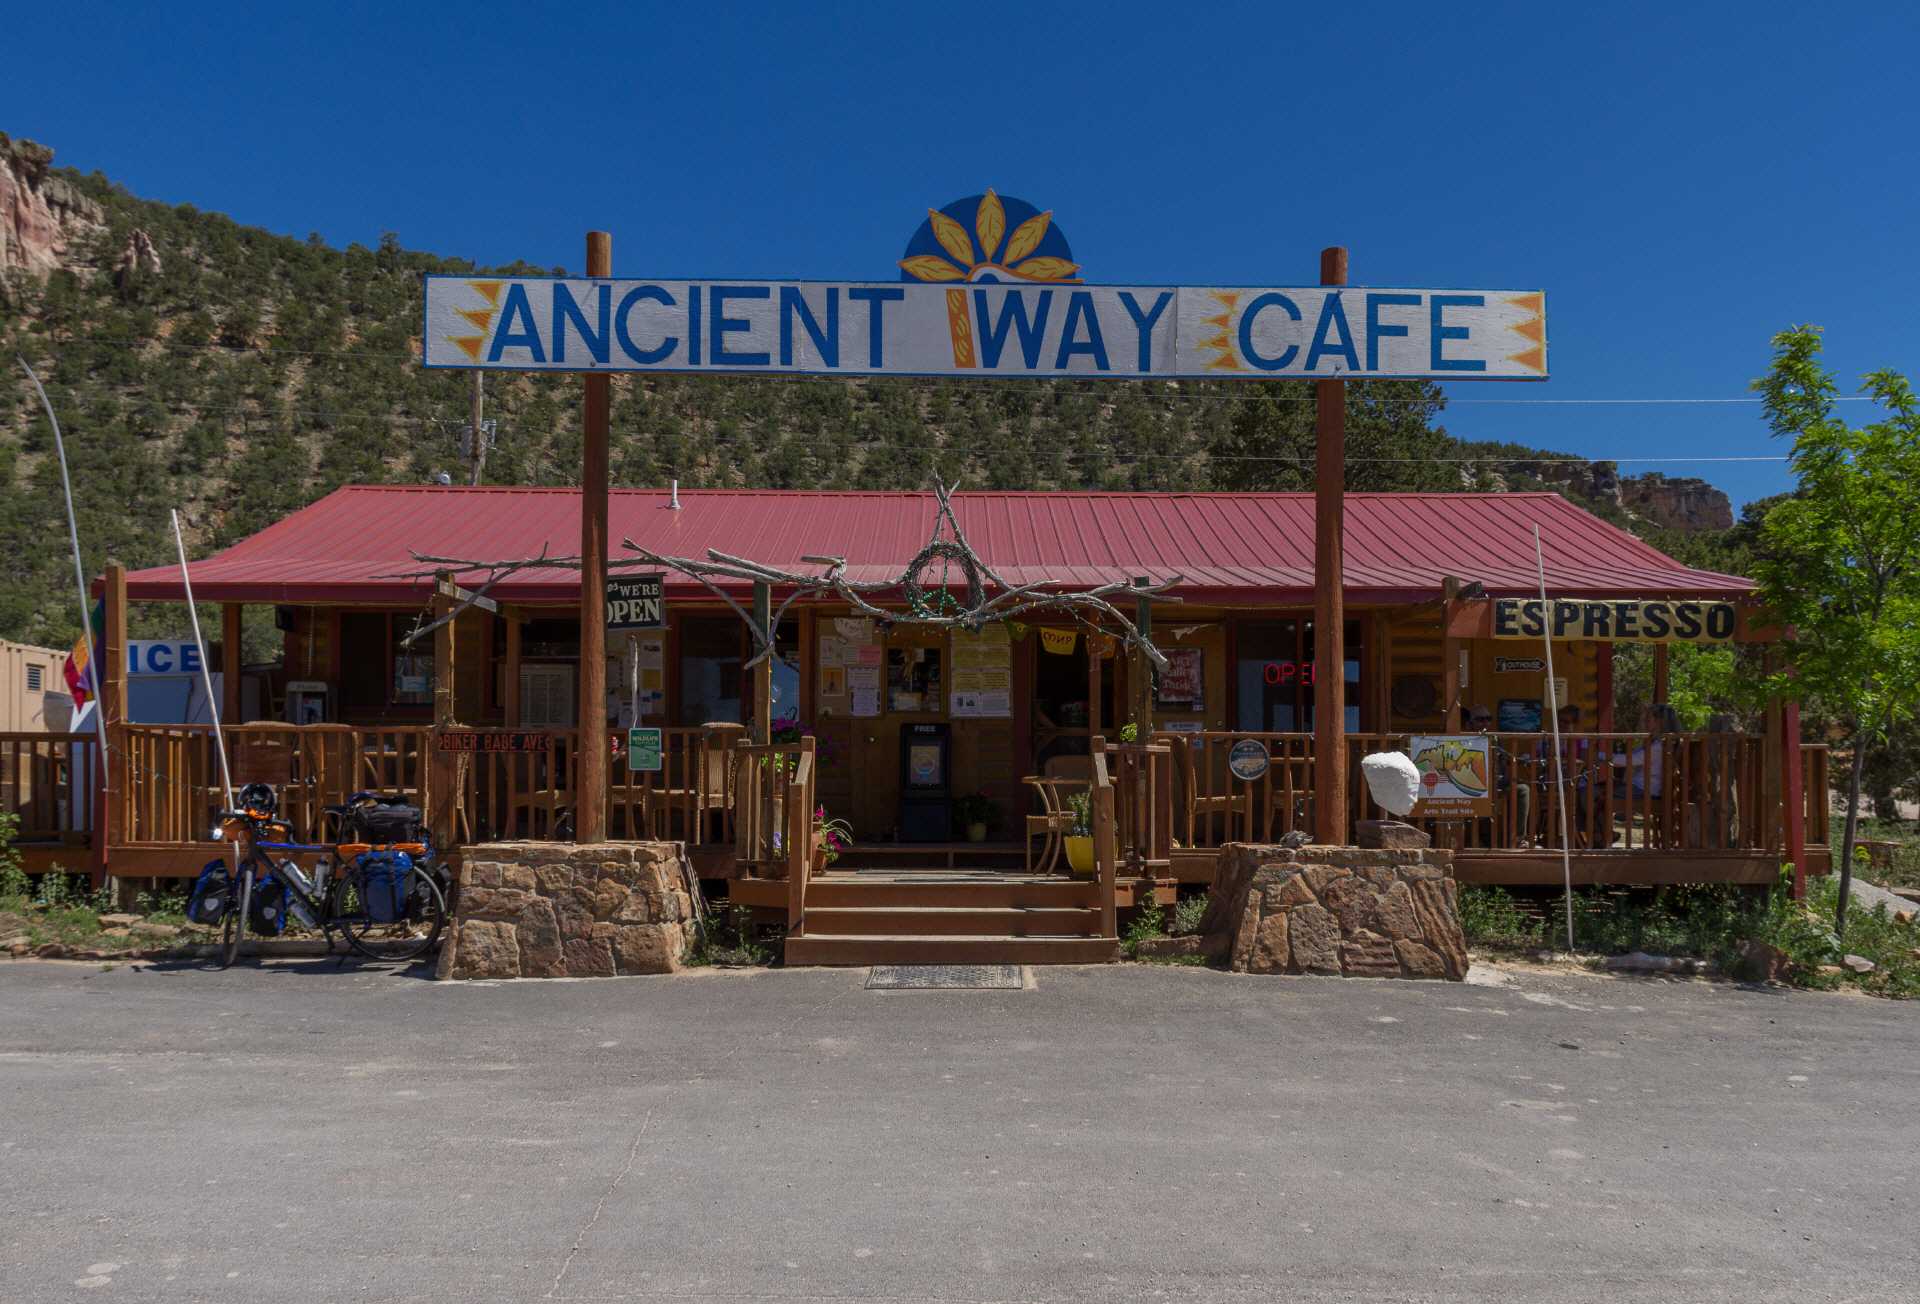 Ancient Way Cafe - Eistee und Teilchen